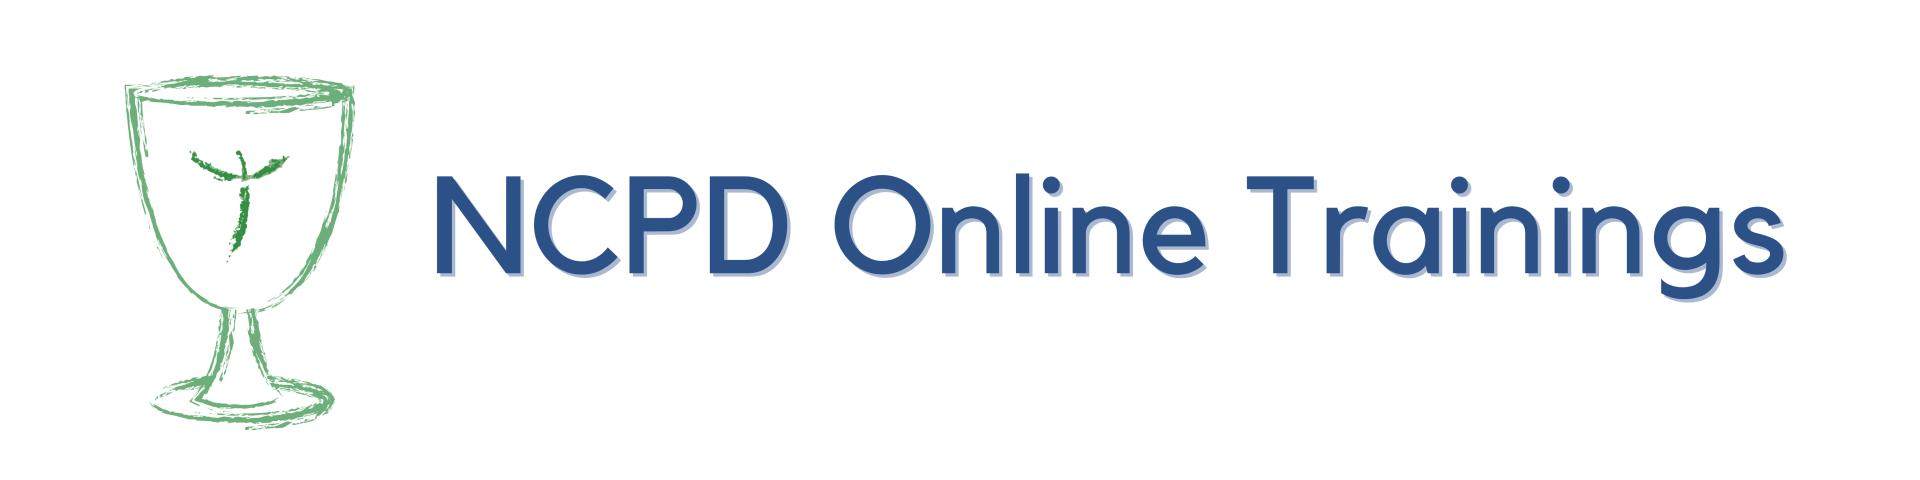 NCPD Online Trainings